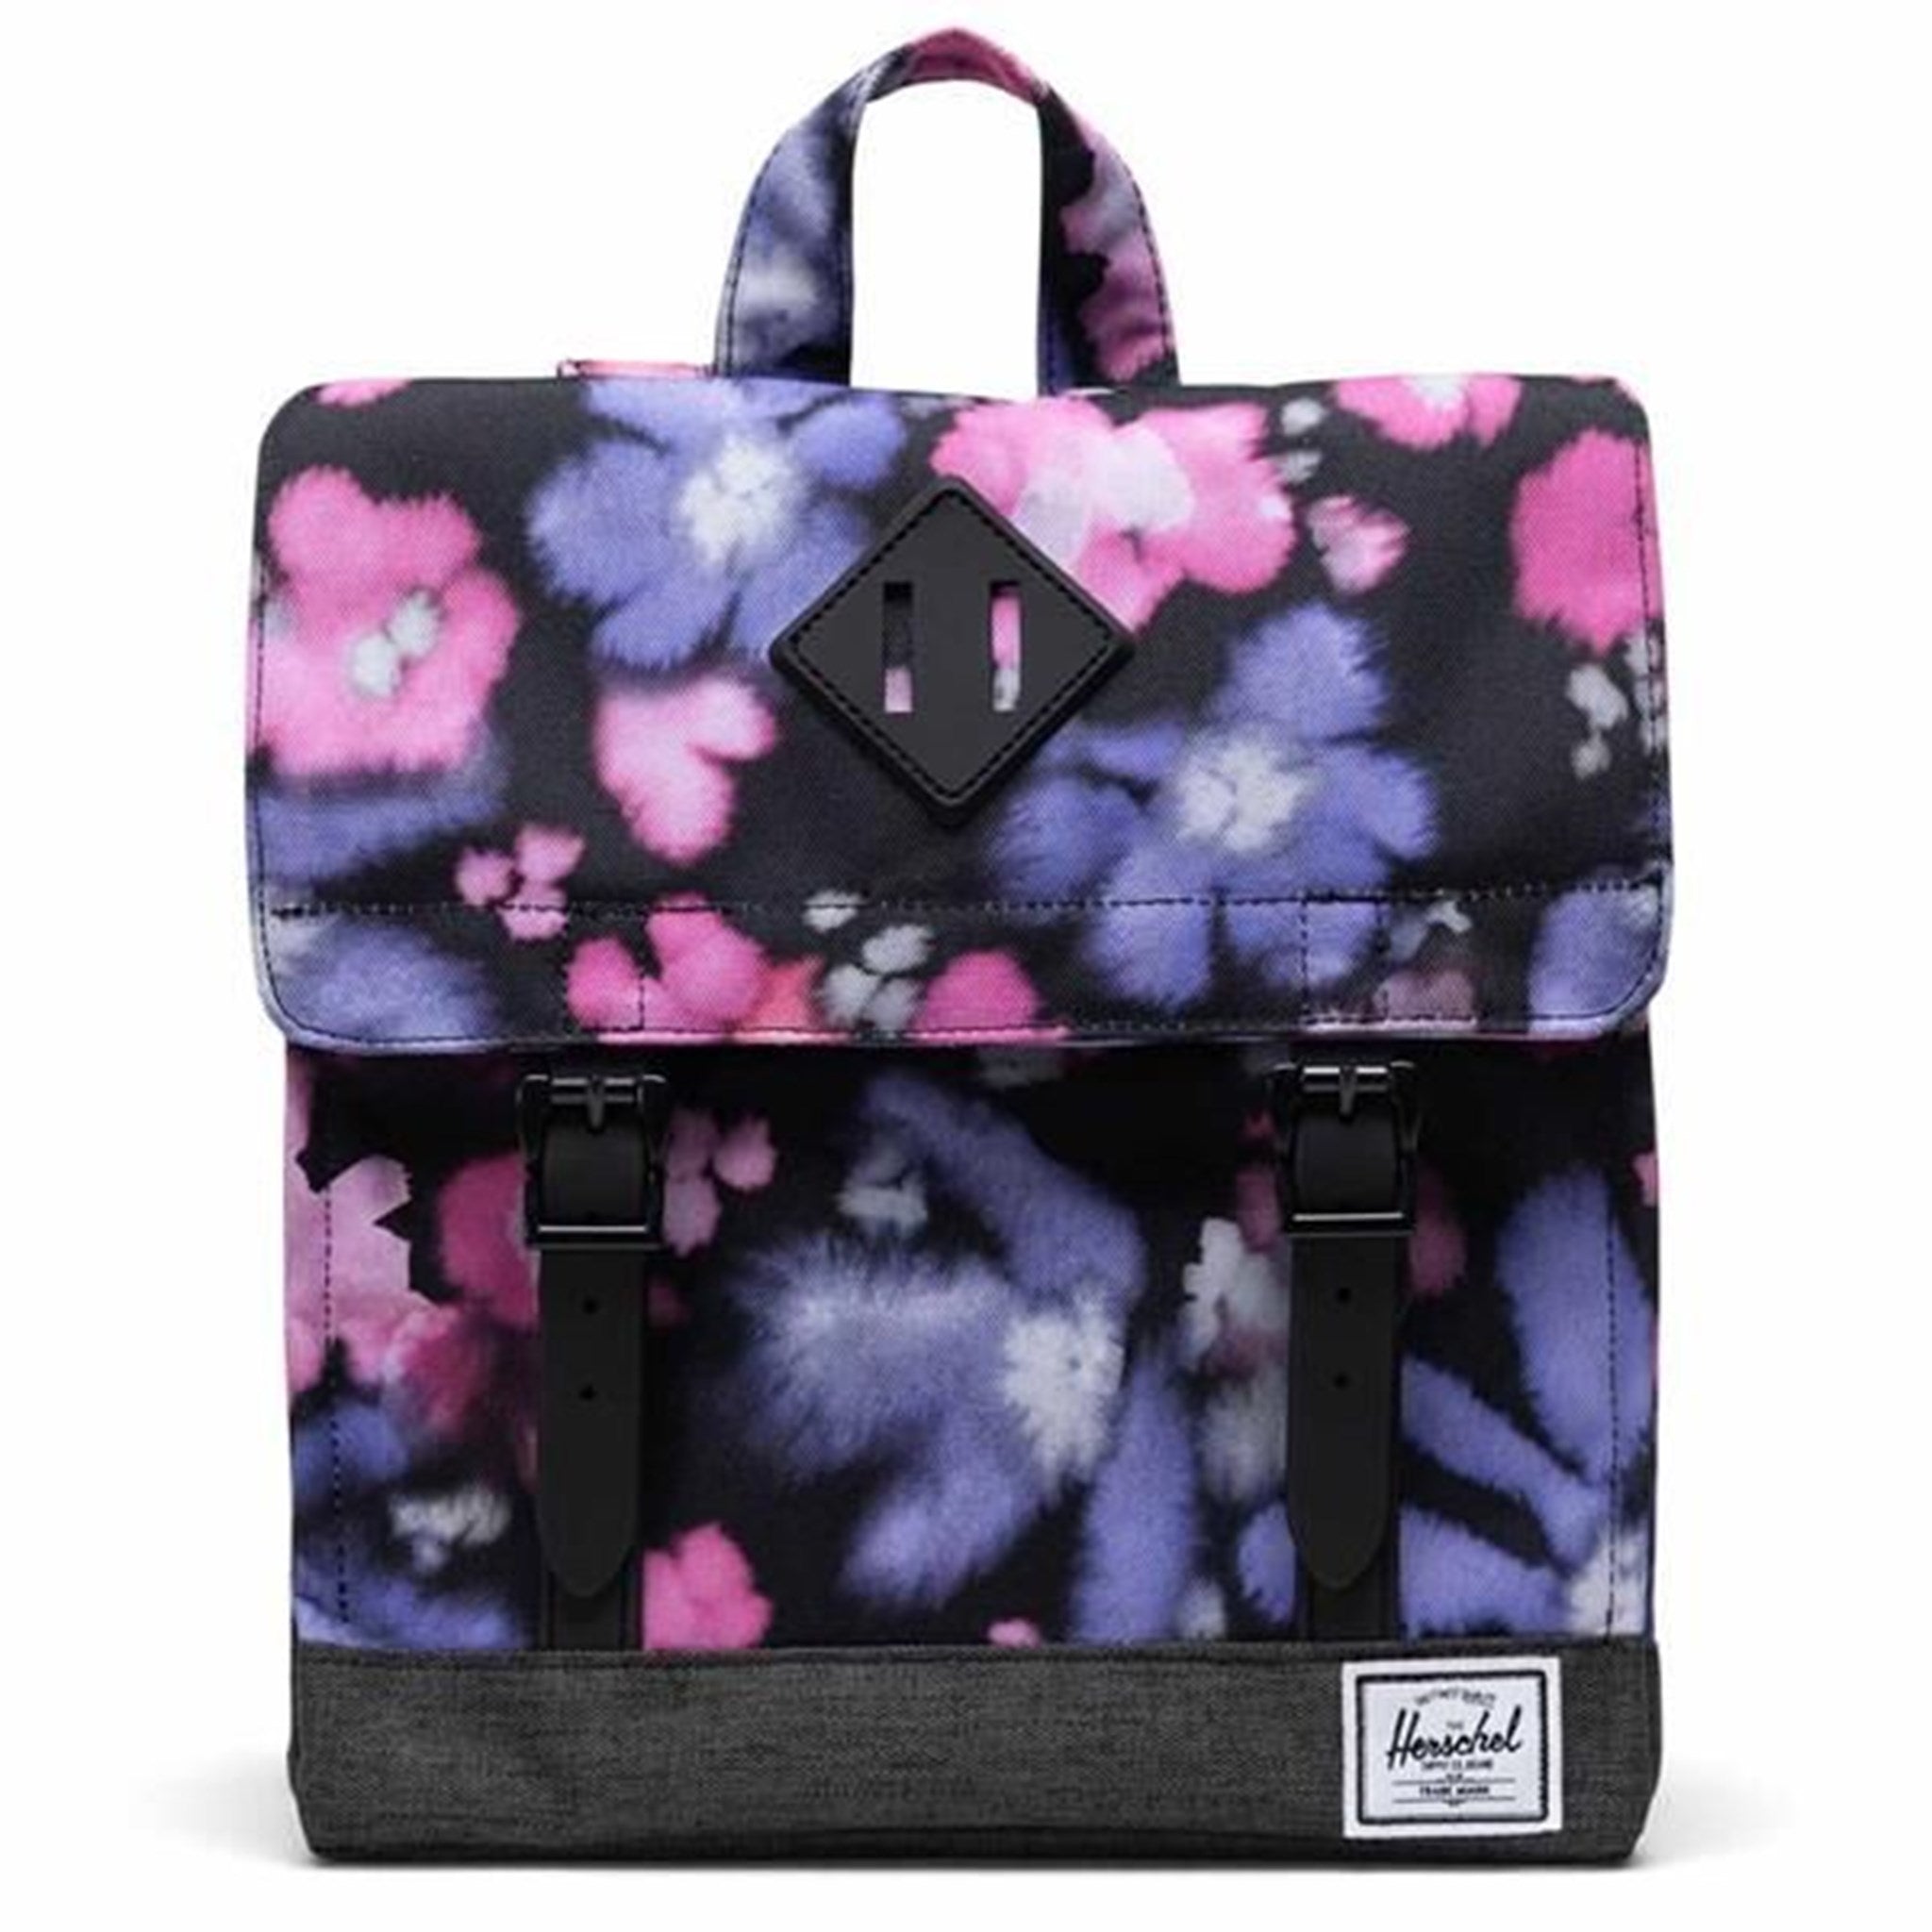 Herschel Survey Kids Backpack Blurry Floral/Black Crosshatch